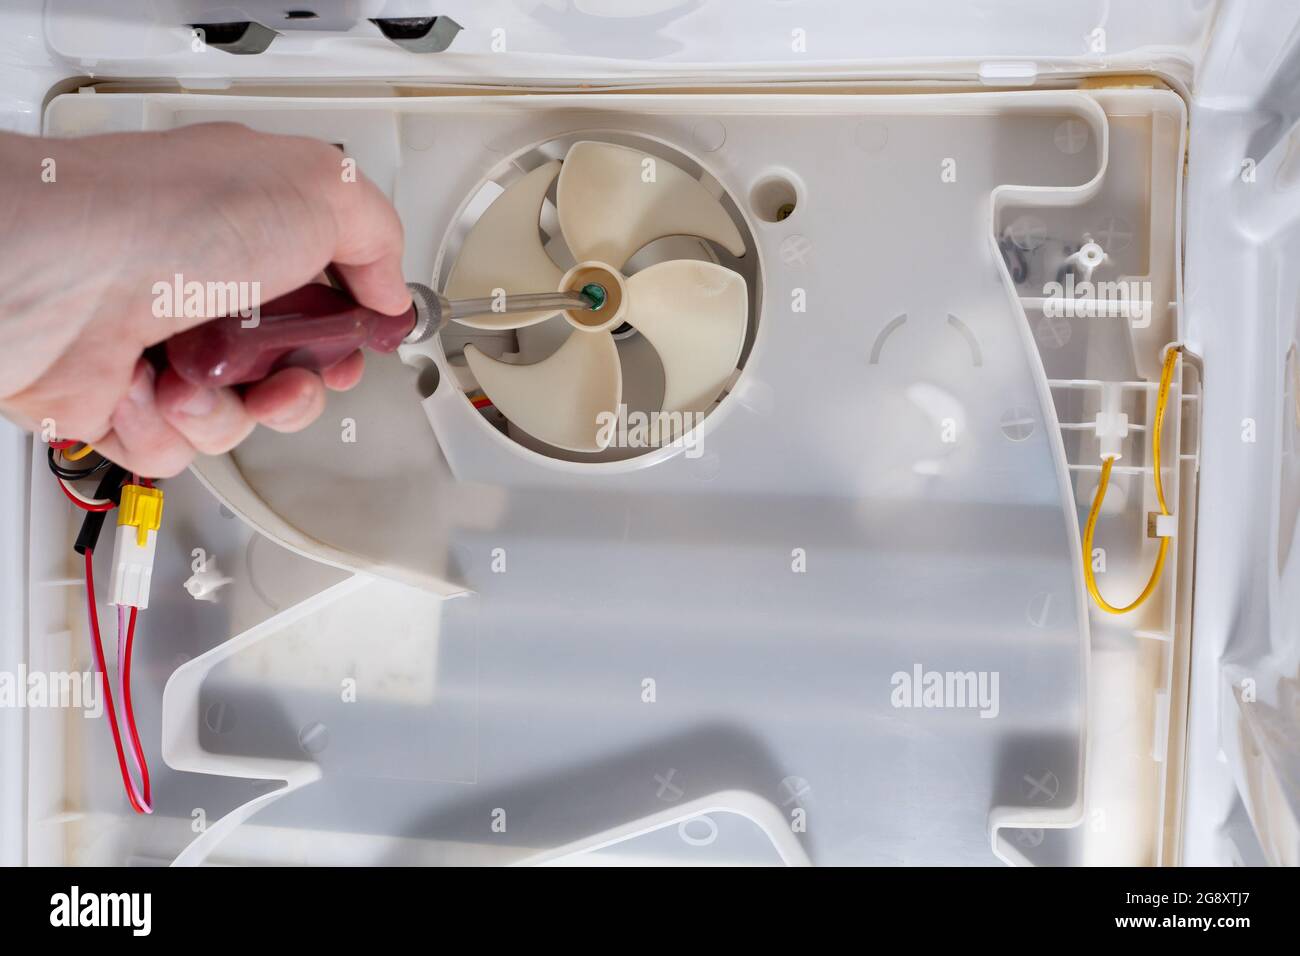 Un tecnico utilizza un cacciavite nel frigorifero. Riparazione interna del frigorifero. Frigorifero smontato. Rimosso coperchio posteriore frigorifero. Riparazione ventola. Foto Stock